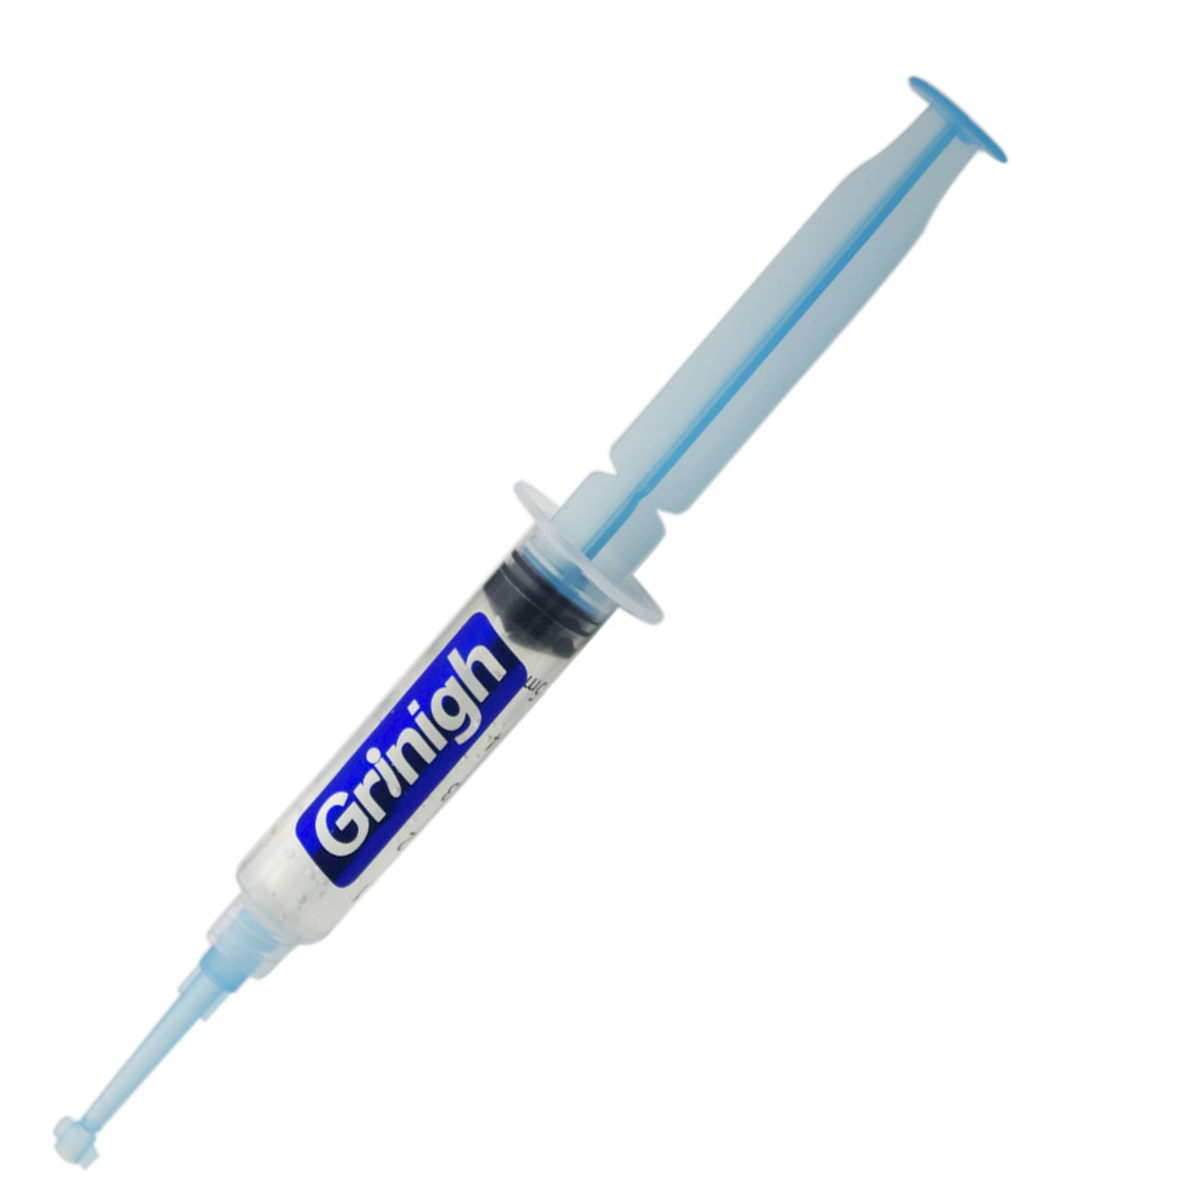 نظام التبييض Grin365 غير مشروط التعبير الأسنان - ديلوكس كيت مع الصمام الخفيفة, إعادة التمعدن جل, VE مسحات, وتبييض الأسنان القلم